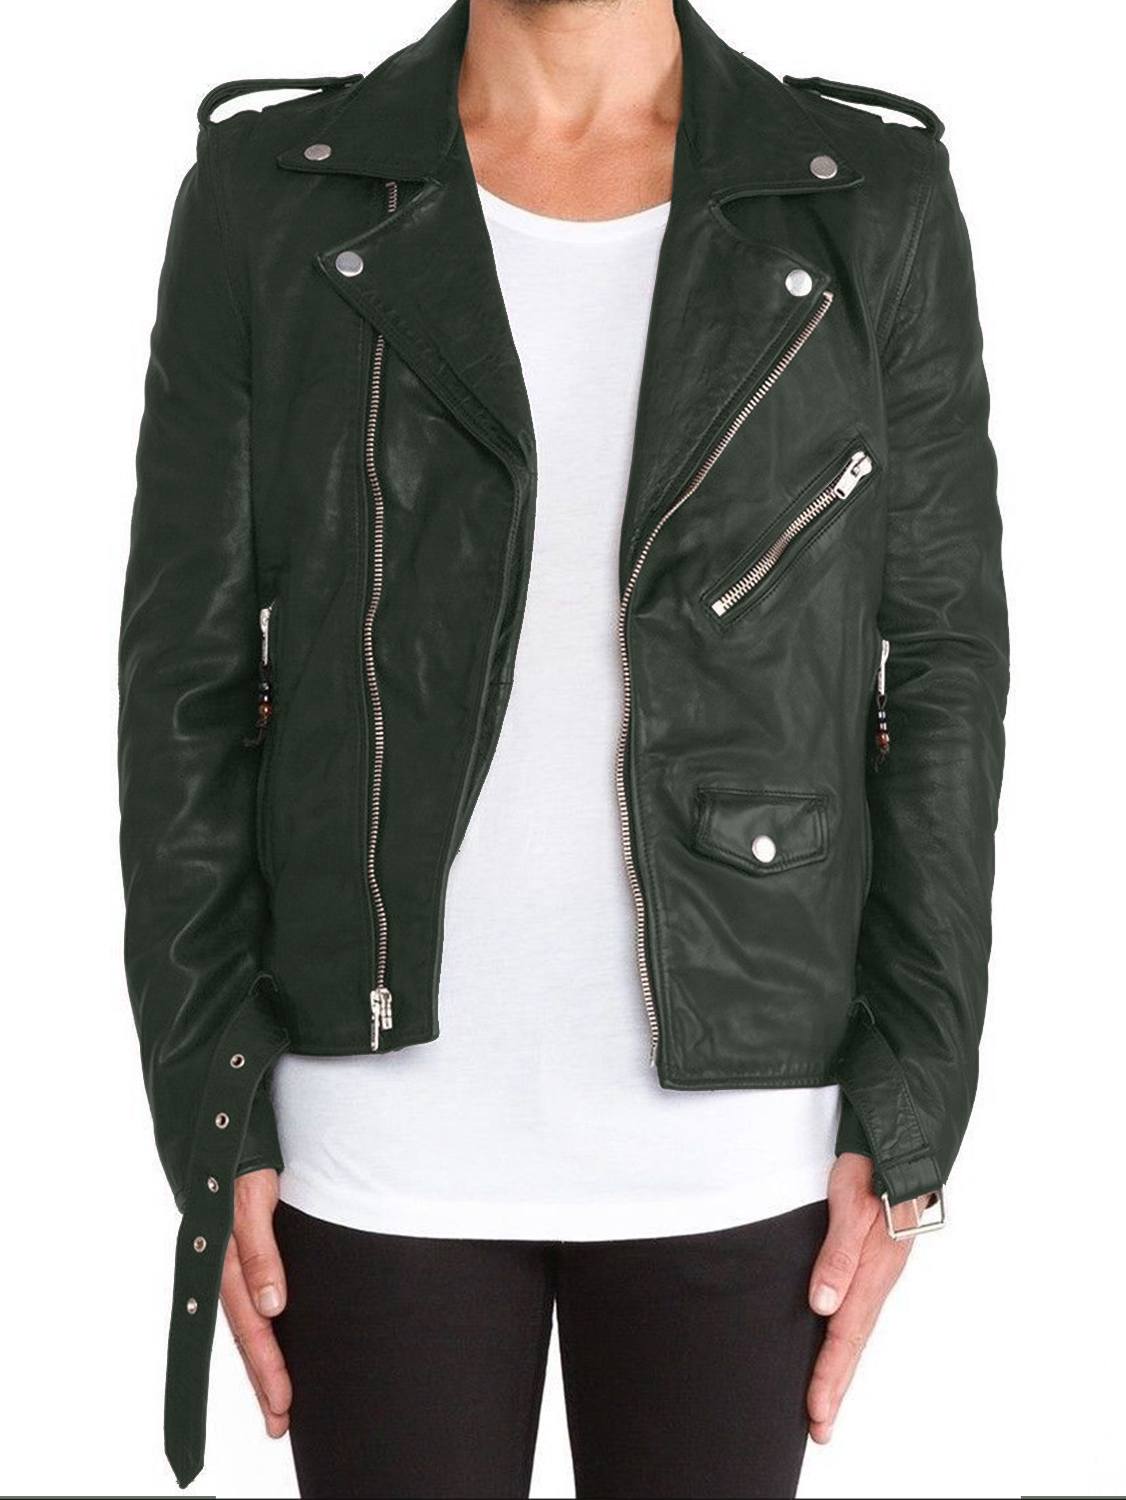 Leather Jackets Hub Mens Genuine Lambskin Leather Jacket (Black, Double Rider Jacket) - 1501115